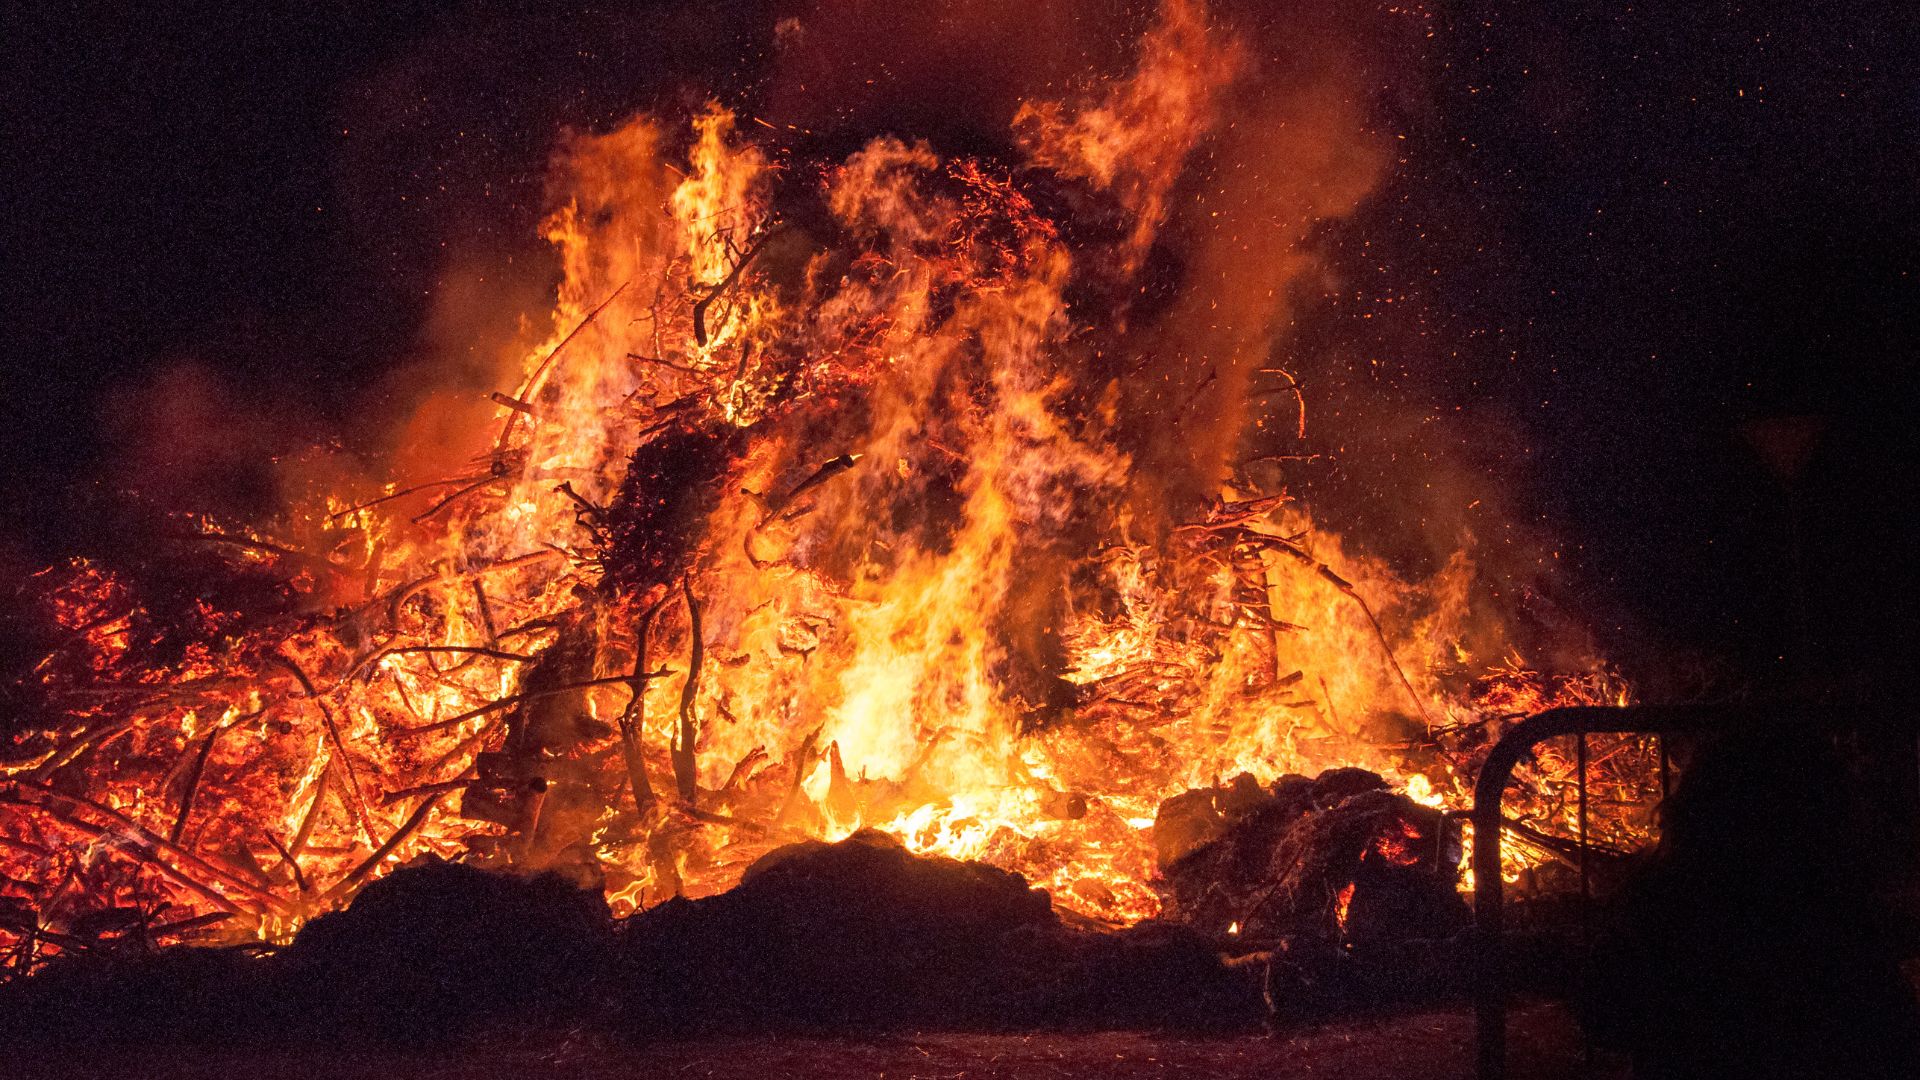 Bonfire Night Safety Tips For Children